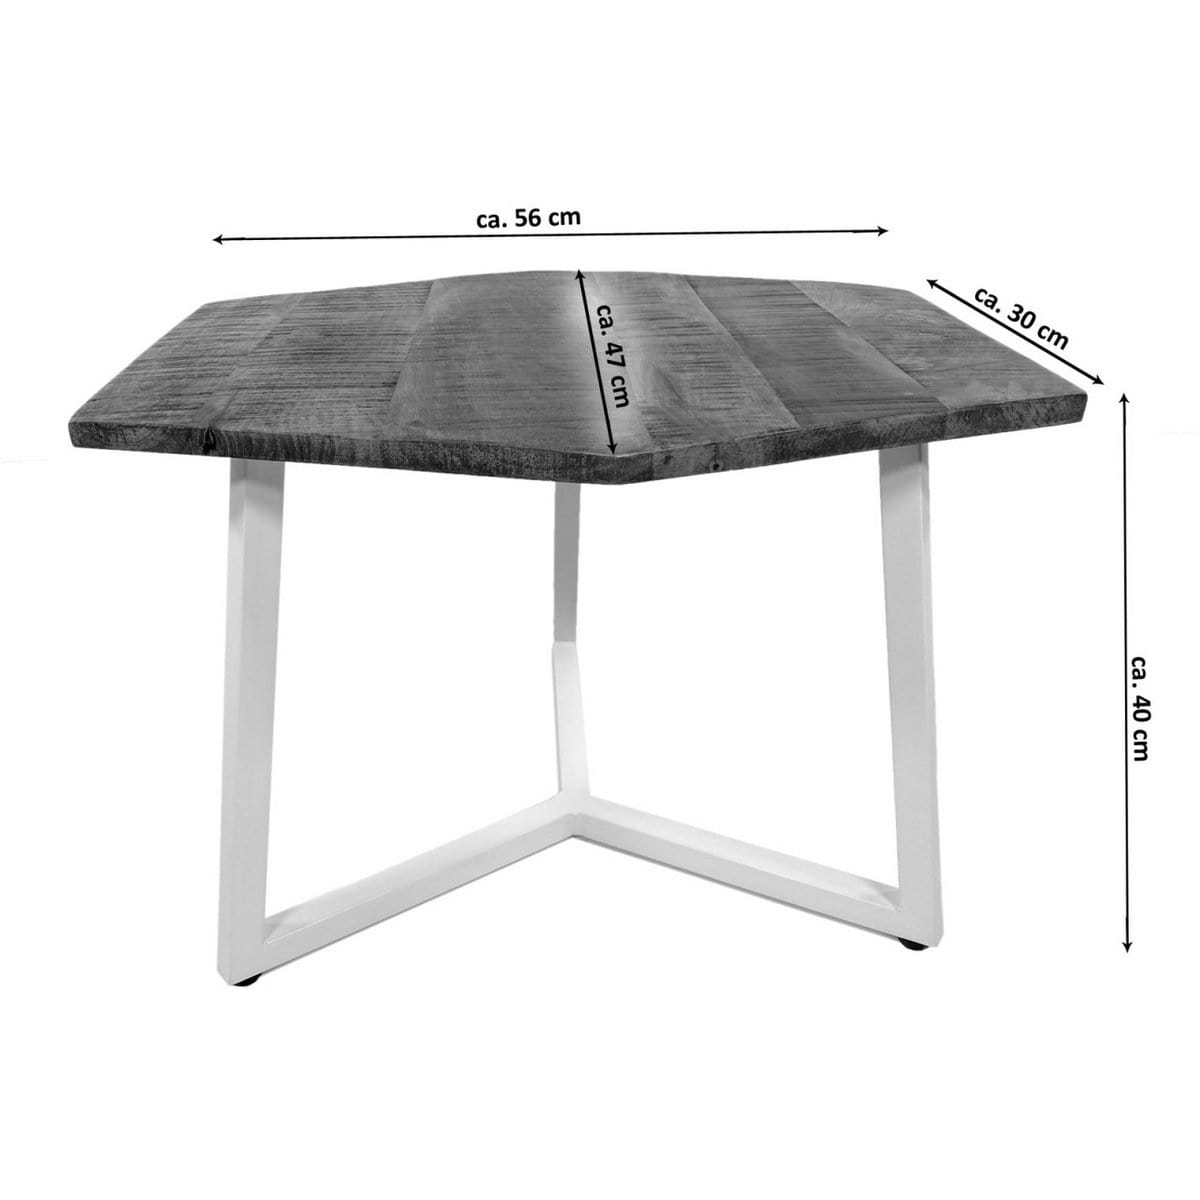 Voglrieder kreatives Wohnen Bijzettafel 56 x 47 cm duurzame woonkamertafel salontafel Leuk metalen frame zwart wit